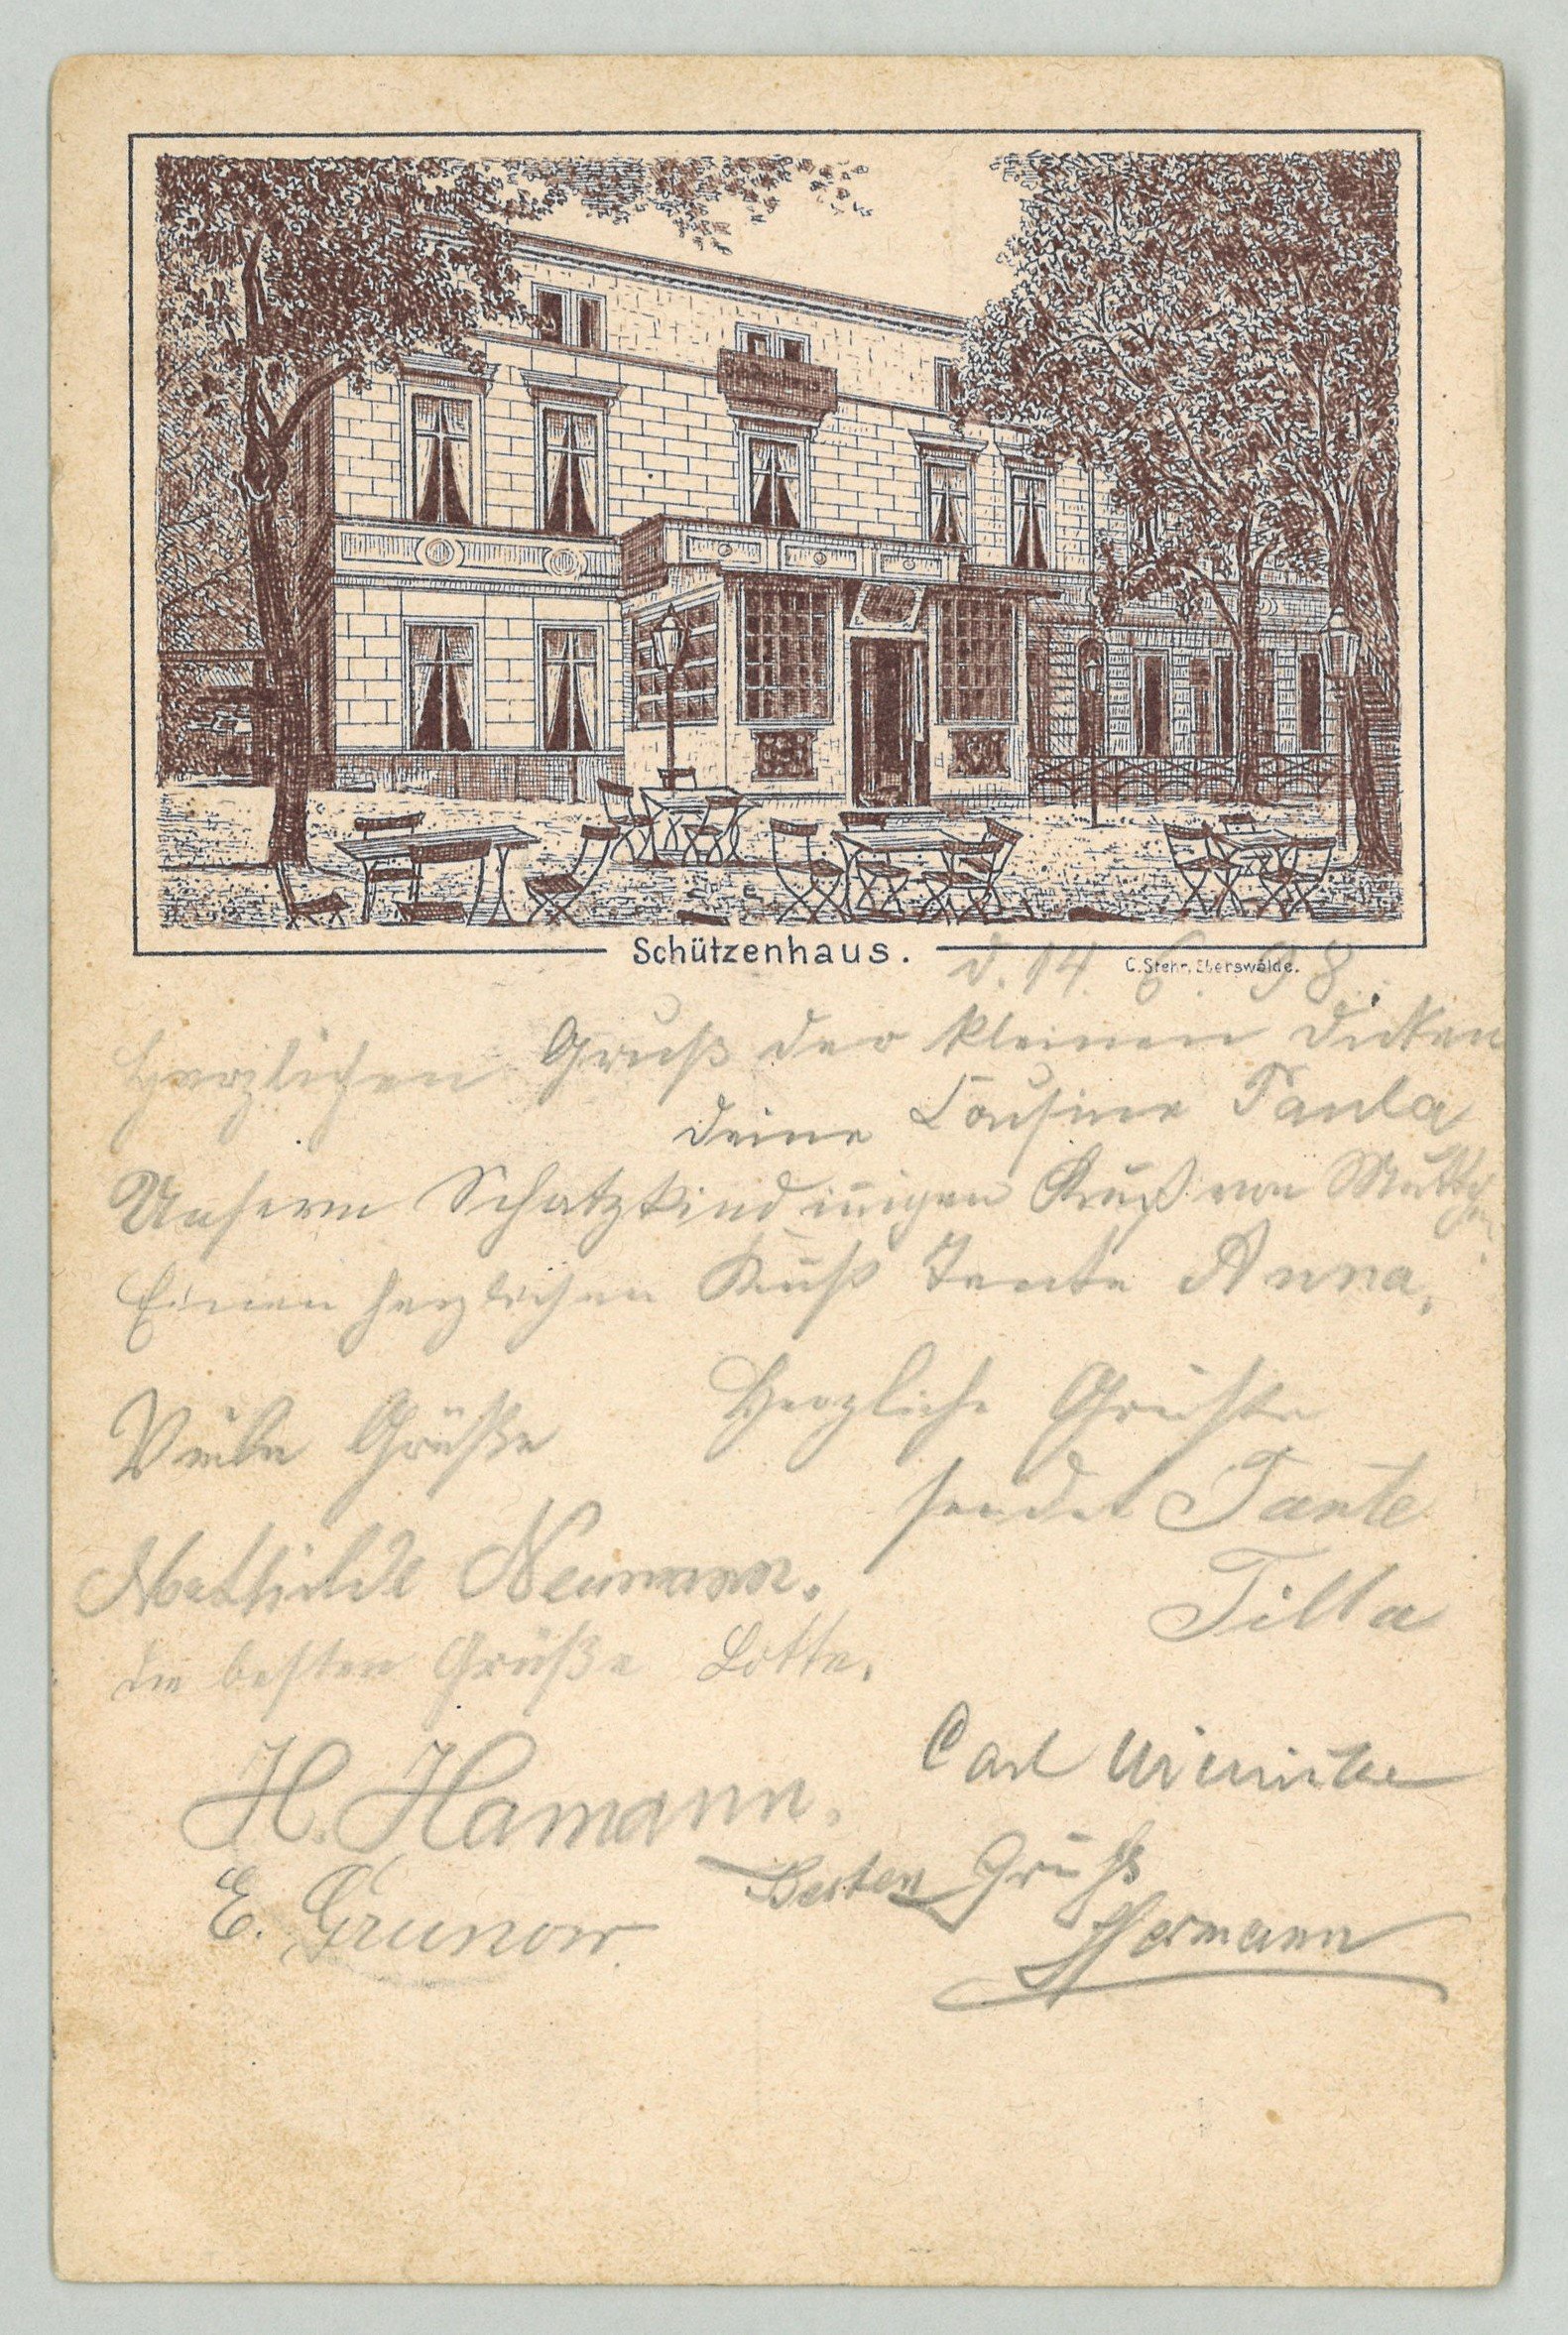 Eberswalde: Schützenhaus (Landesgeschichtliche Vereinigung für die Mark Brandenburg e.V., Archiv CC BY)